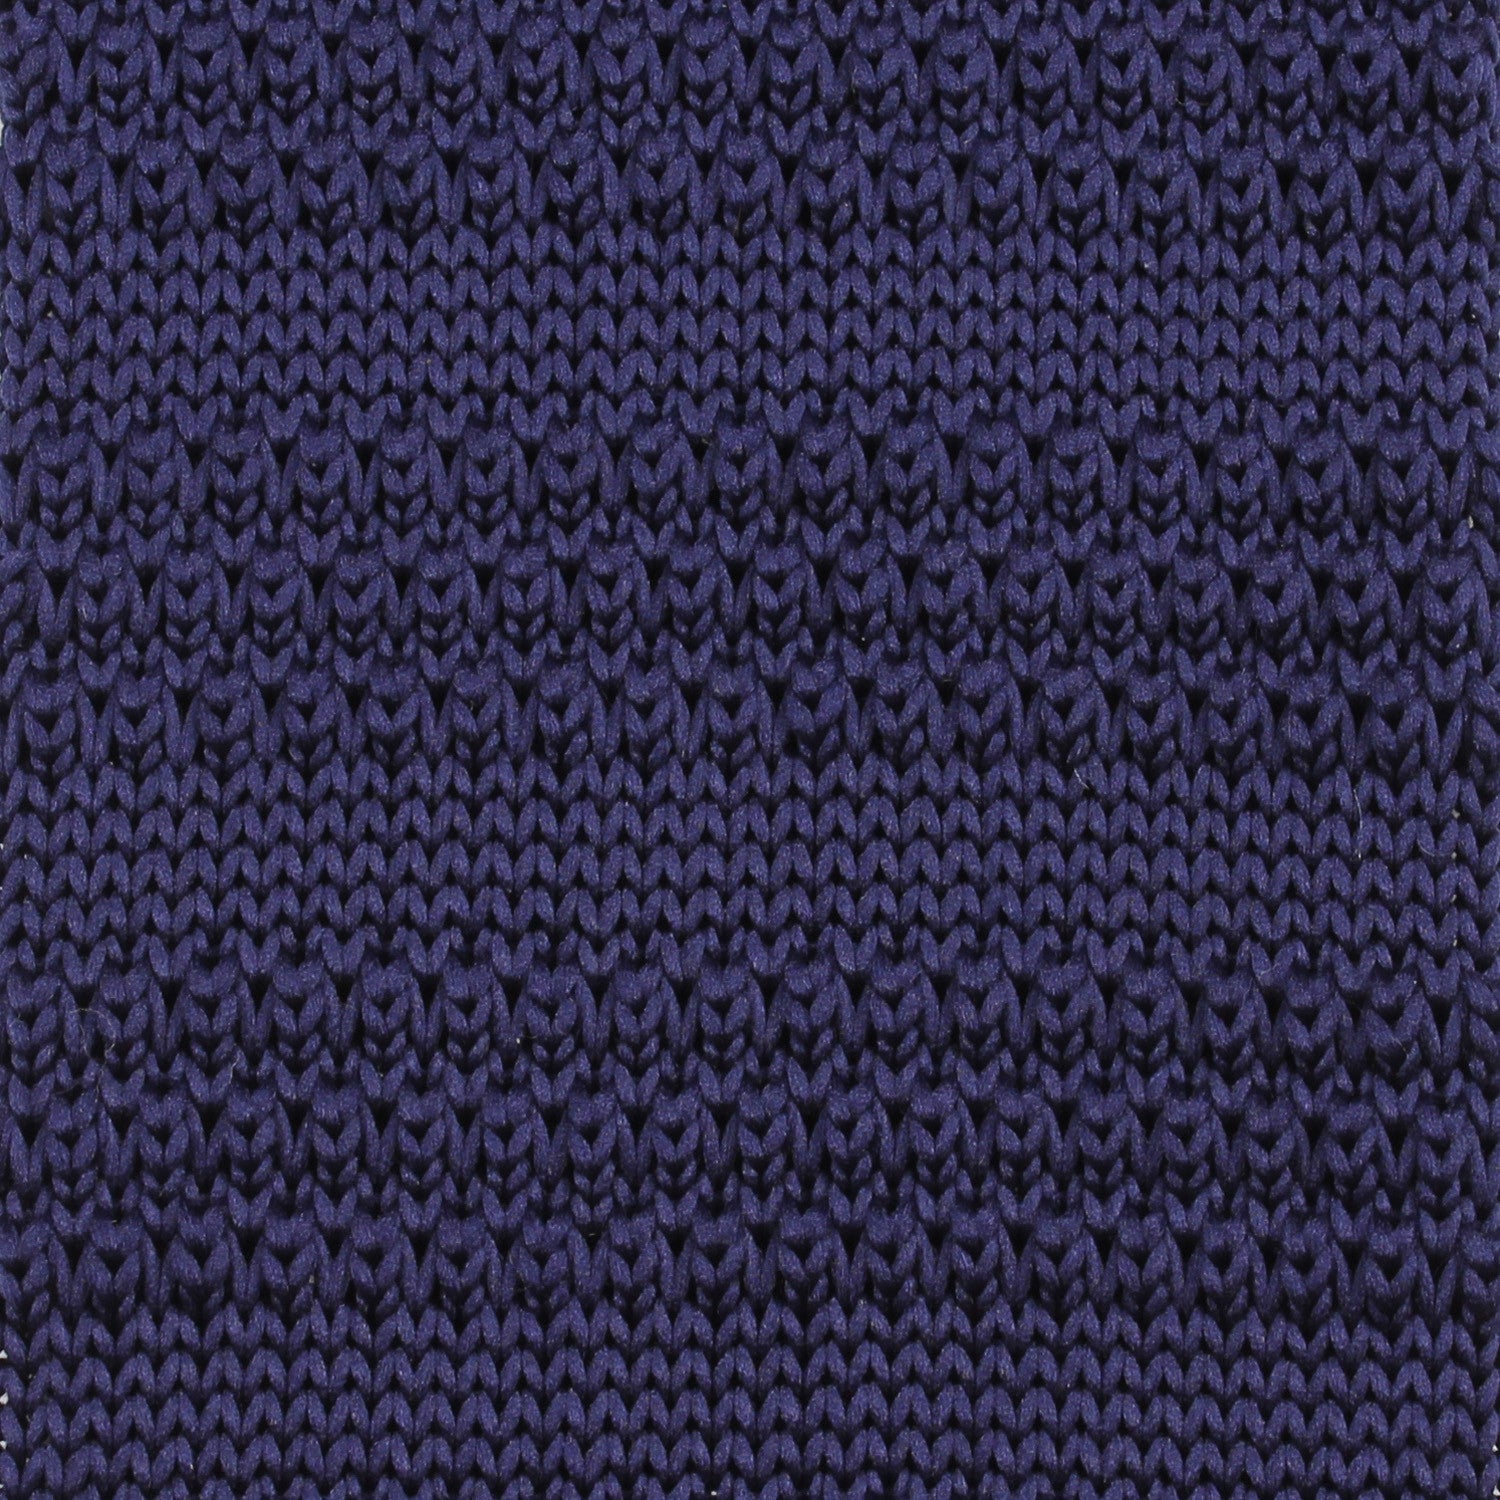 Dark Purple Knitted Tie Detail View